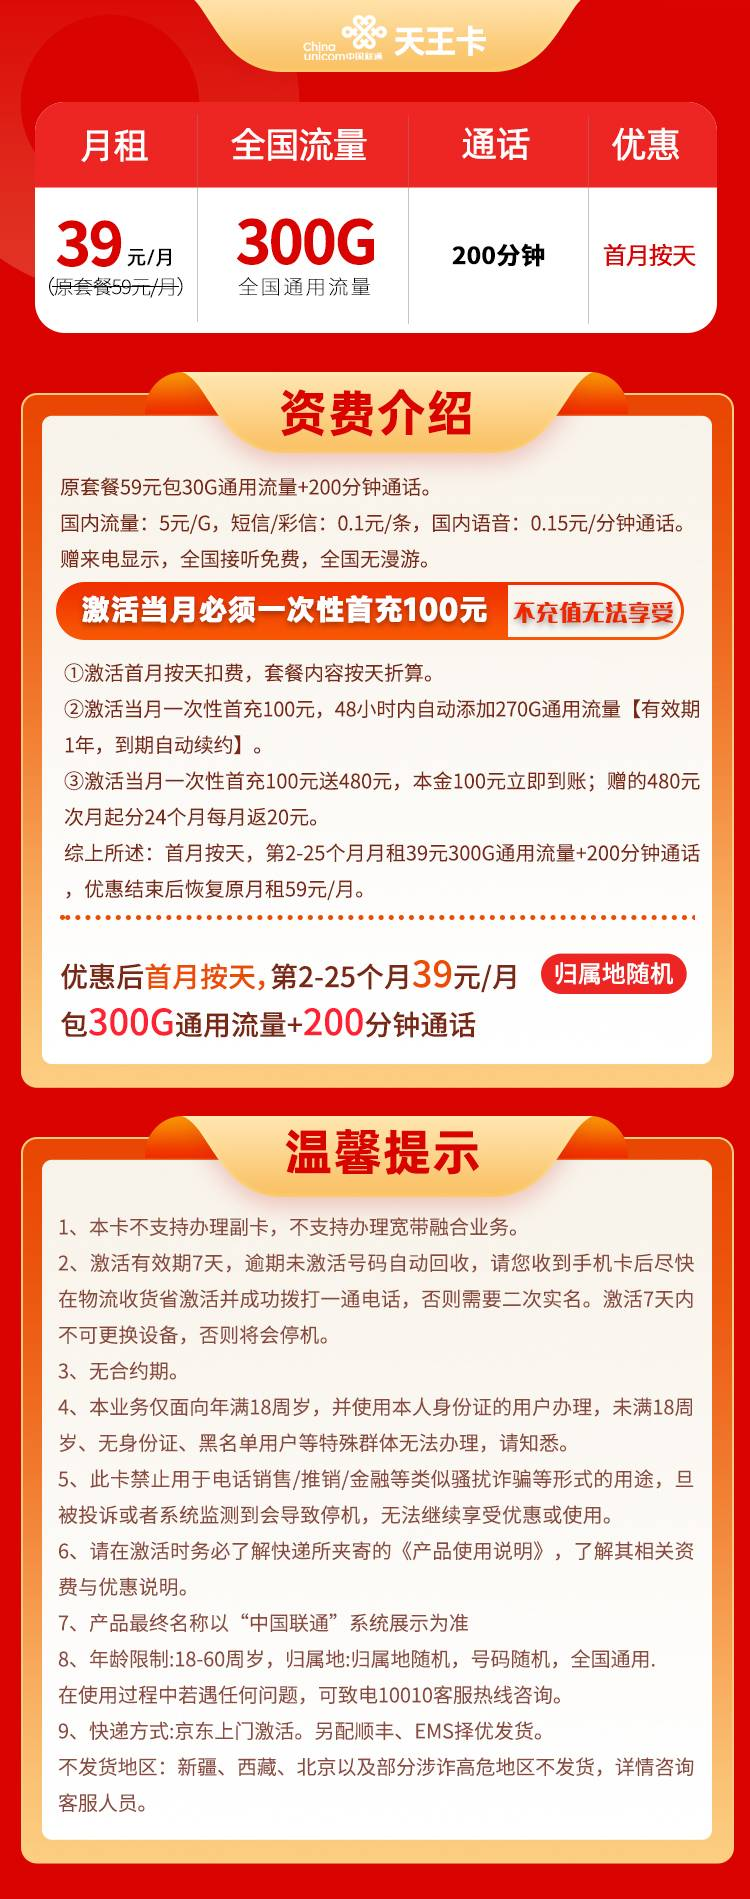 天王卡39元300G通用+200分钟通话-精卡网